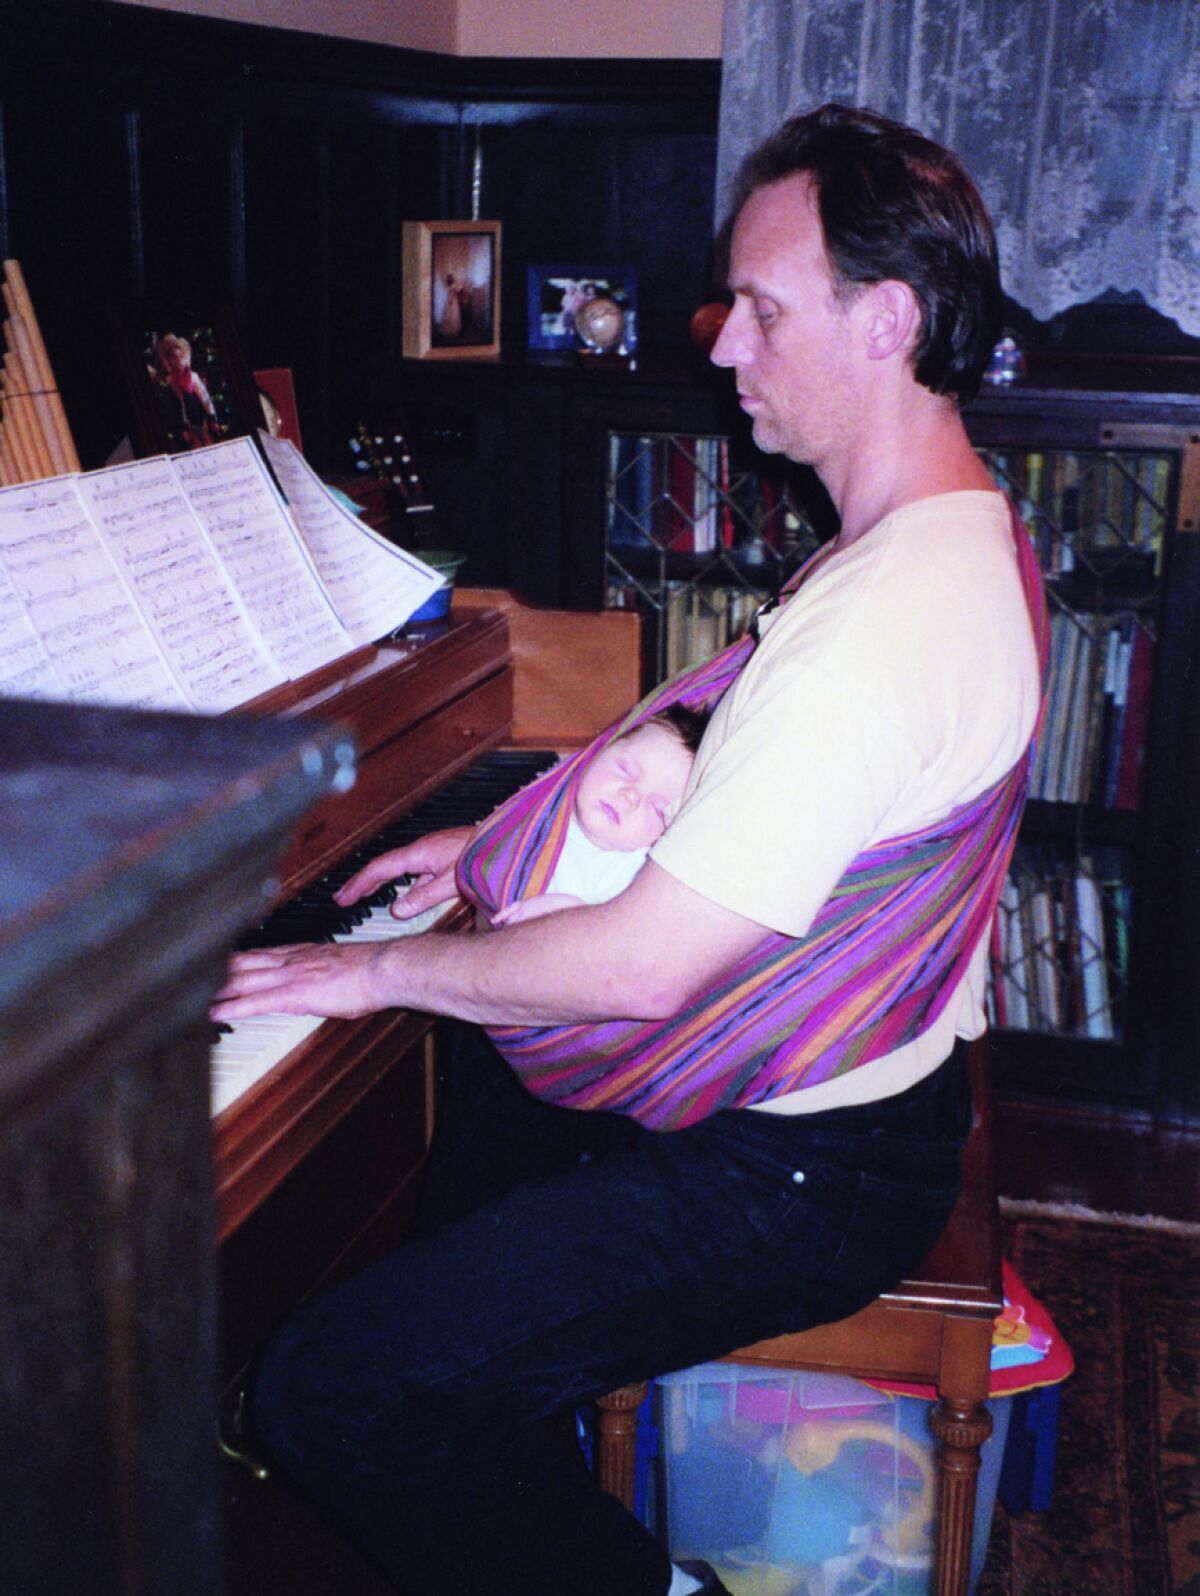 A man and baby at a piano